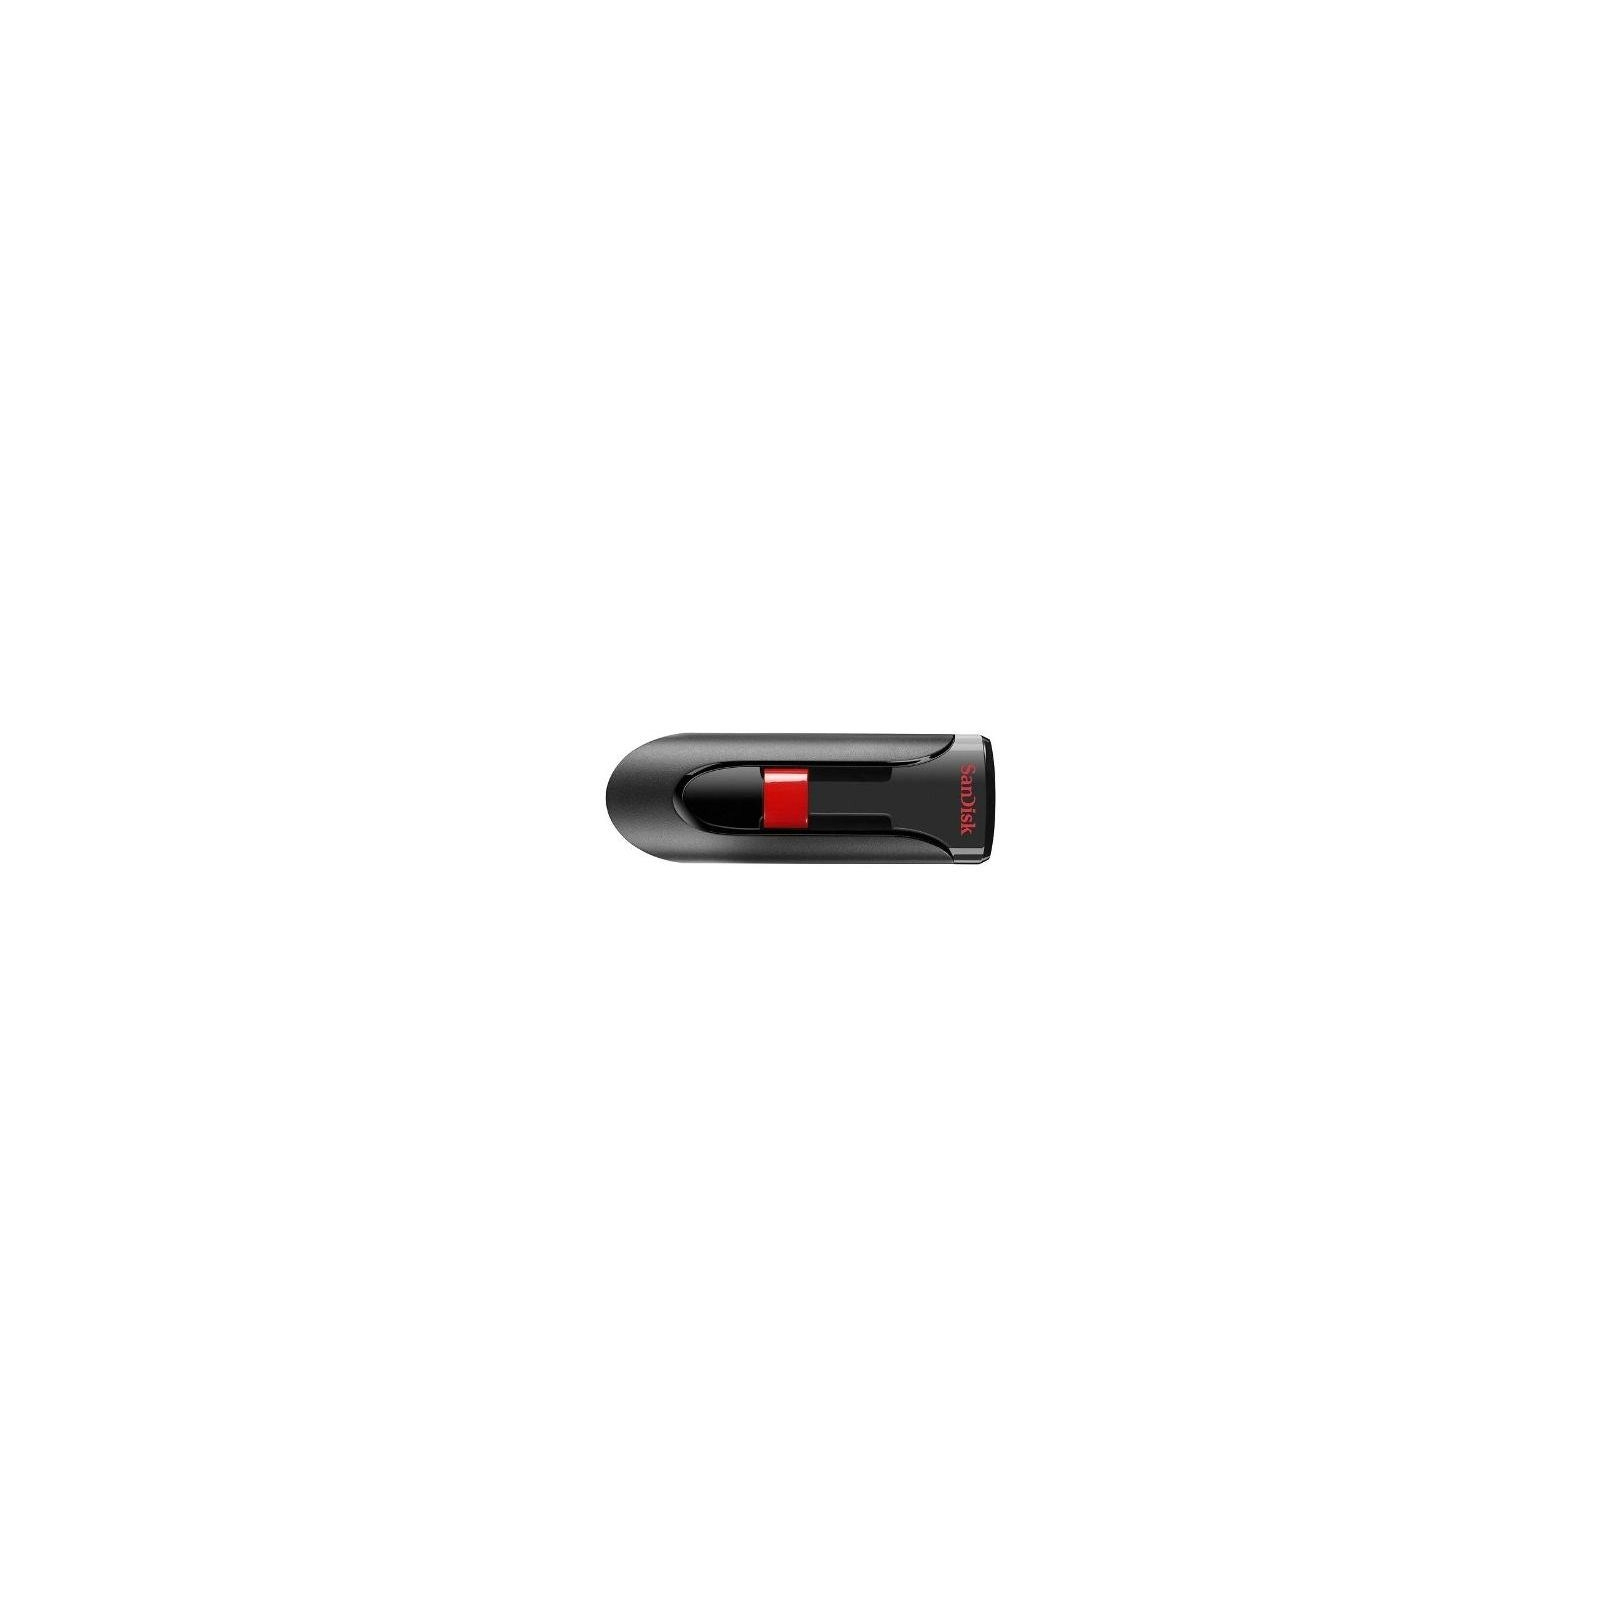 USB флеш накопитель SanDisk 256GB Cruzer Glide USB 3.0 (SDCZ60-256G-B35)